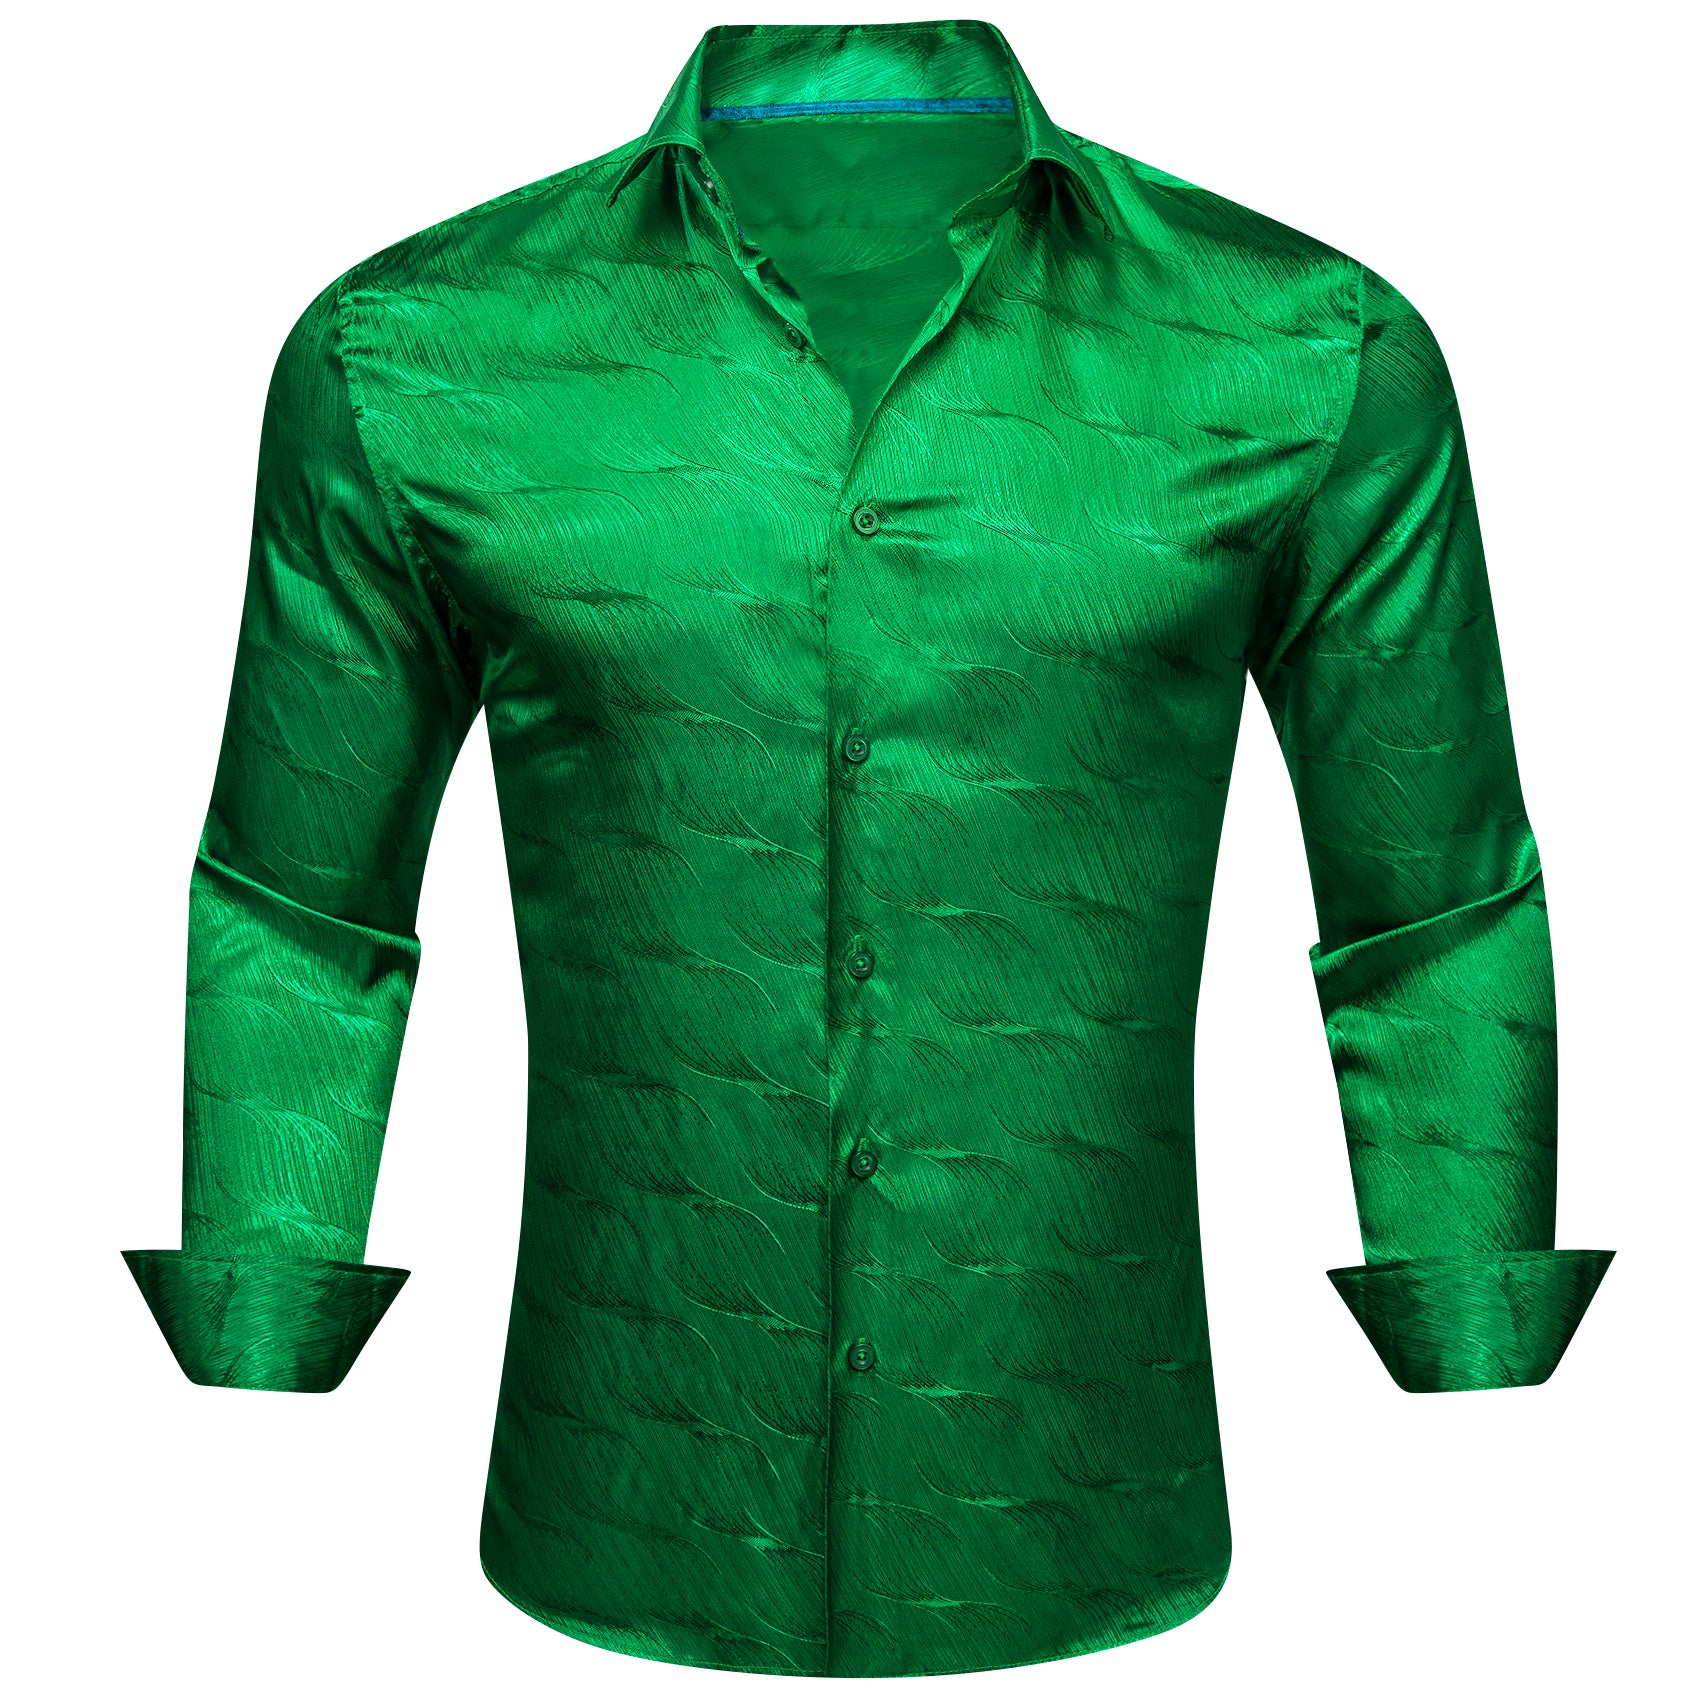 Barry.wang Cobalt Green Ripple Silk Men's Shirt